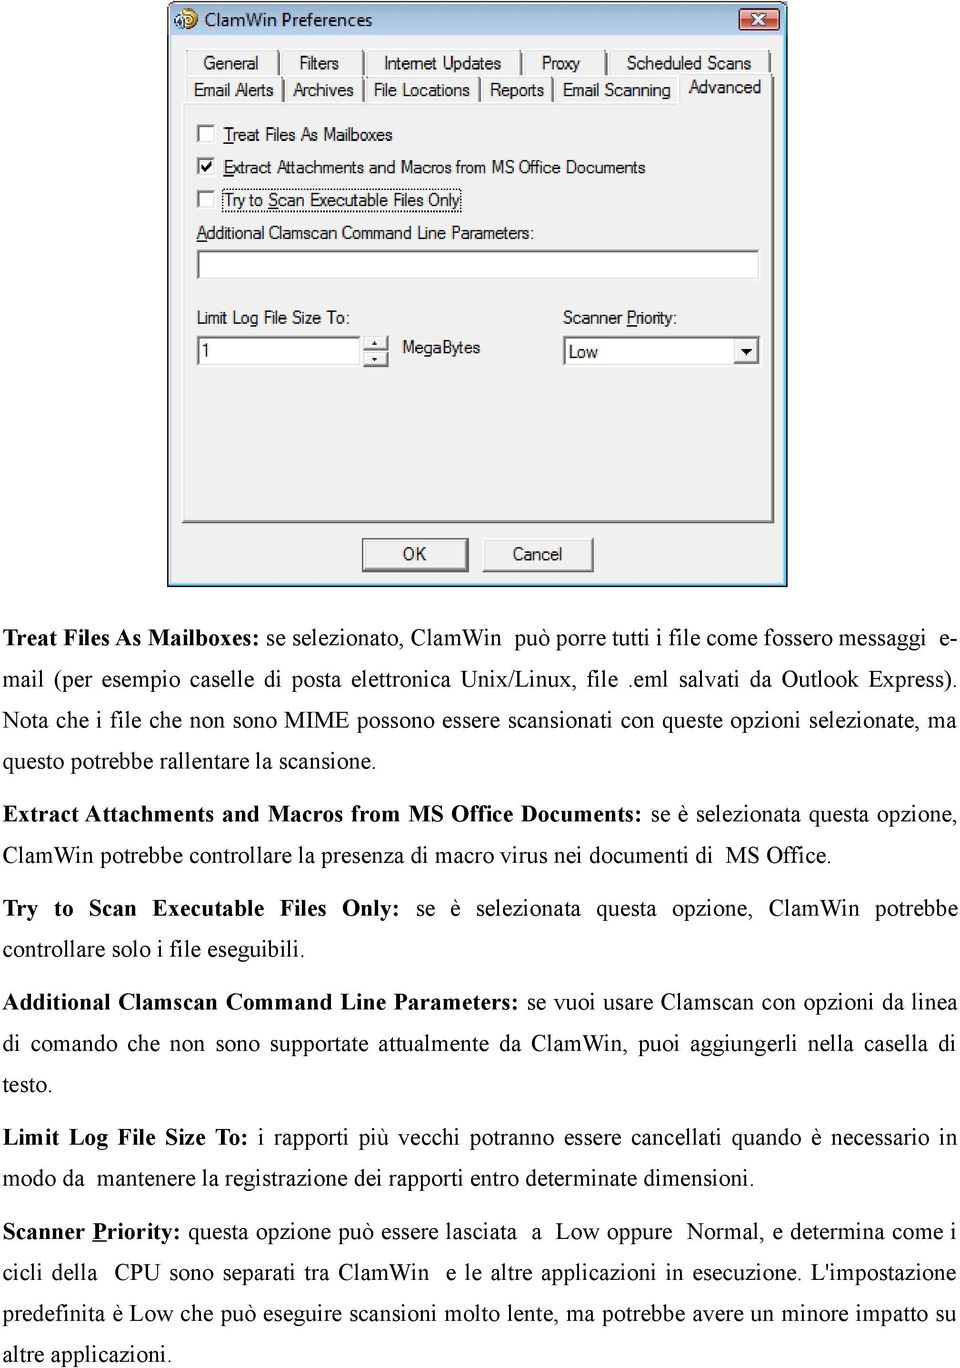 Extract Attachments and Macros from MS Office Documents: se è selezionata questa opzione, ClamWin potrebbe controllare la presenza di macro virus nei documenti di MS Office.